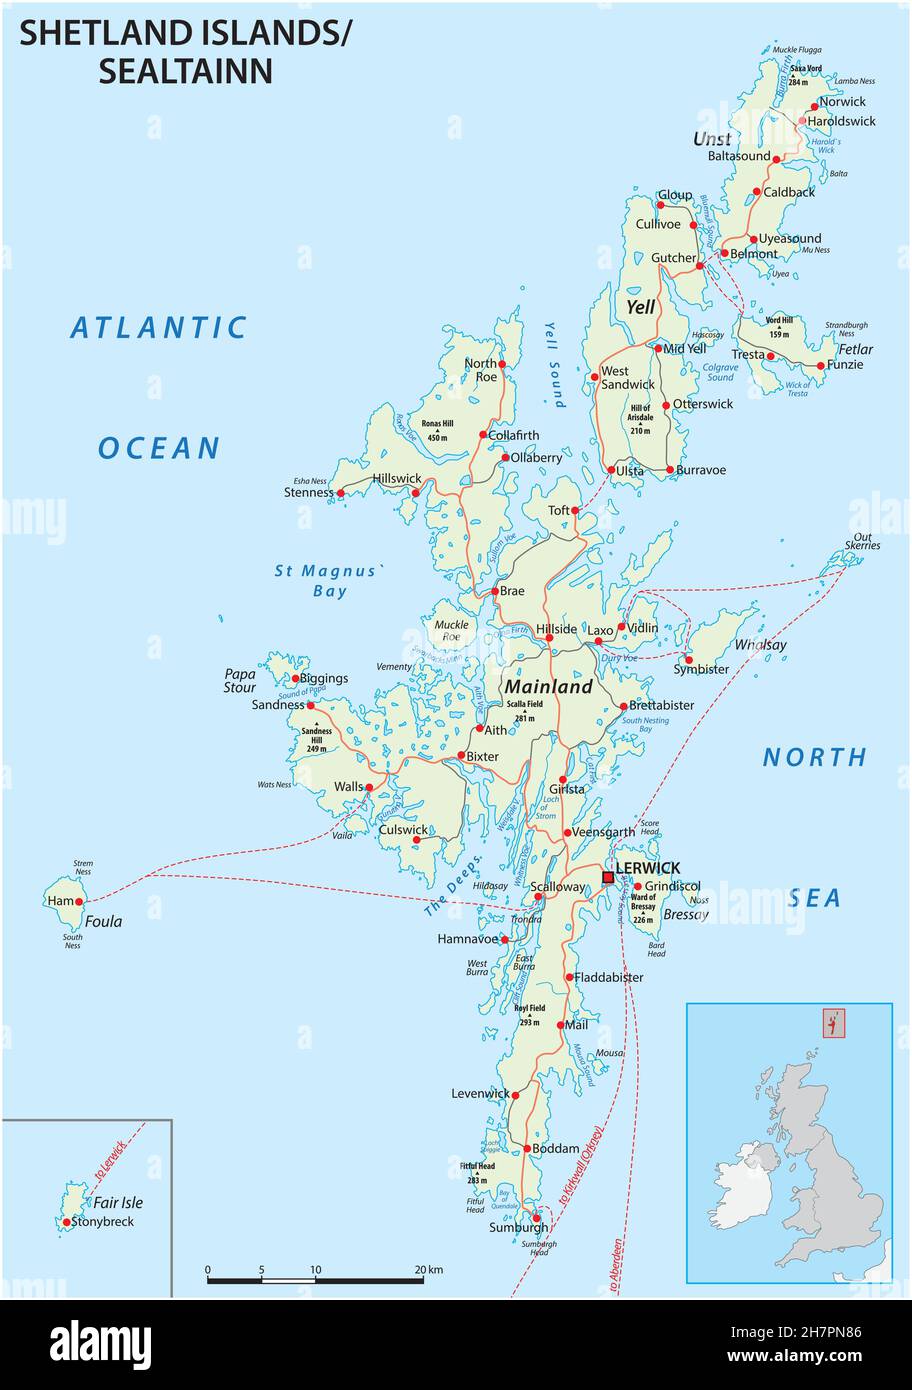 Detaillierte Shetland-Inseln-Straßenkarte mit Beschriftung, Großbritannien Stock Vektor